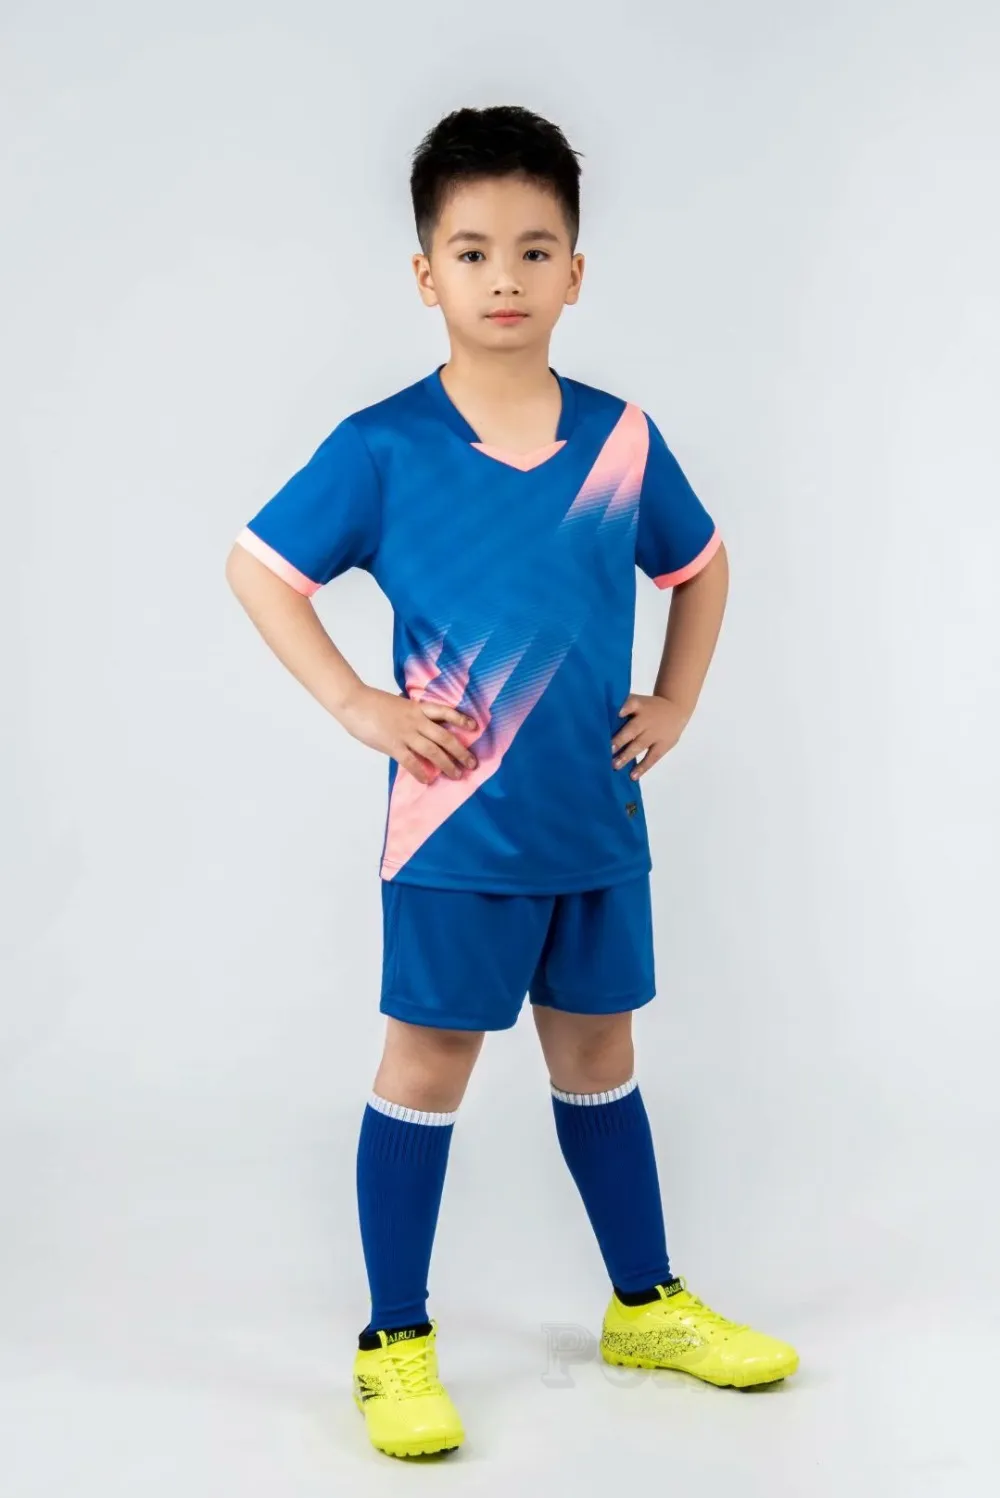 # GB01 Jessie store J4 Joorda ملابس أطفال قمصان رياضية خارجية